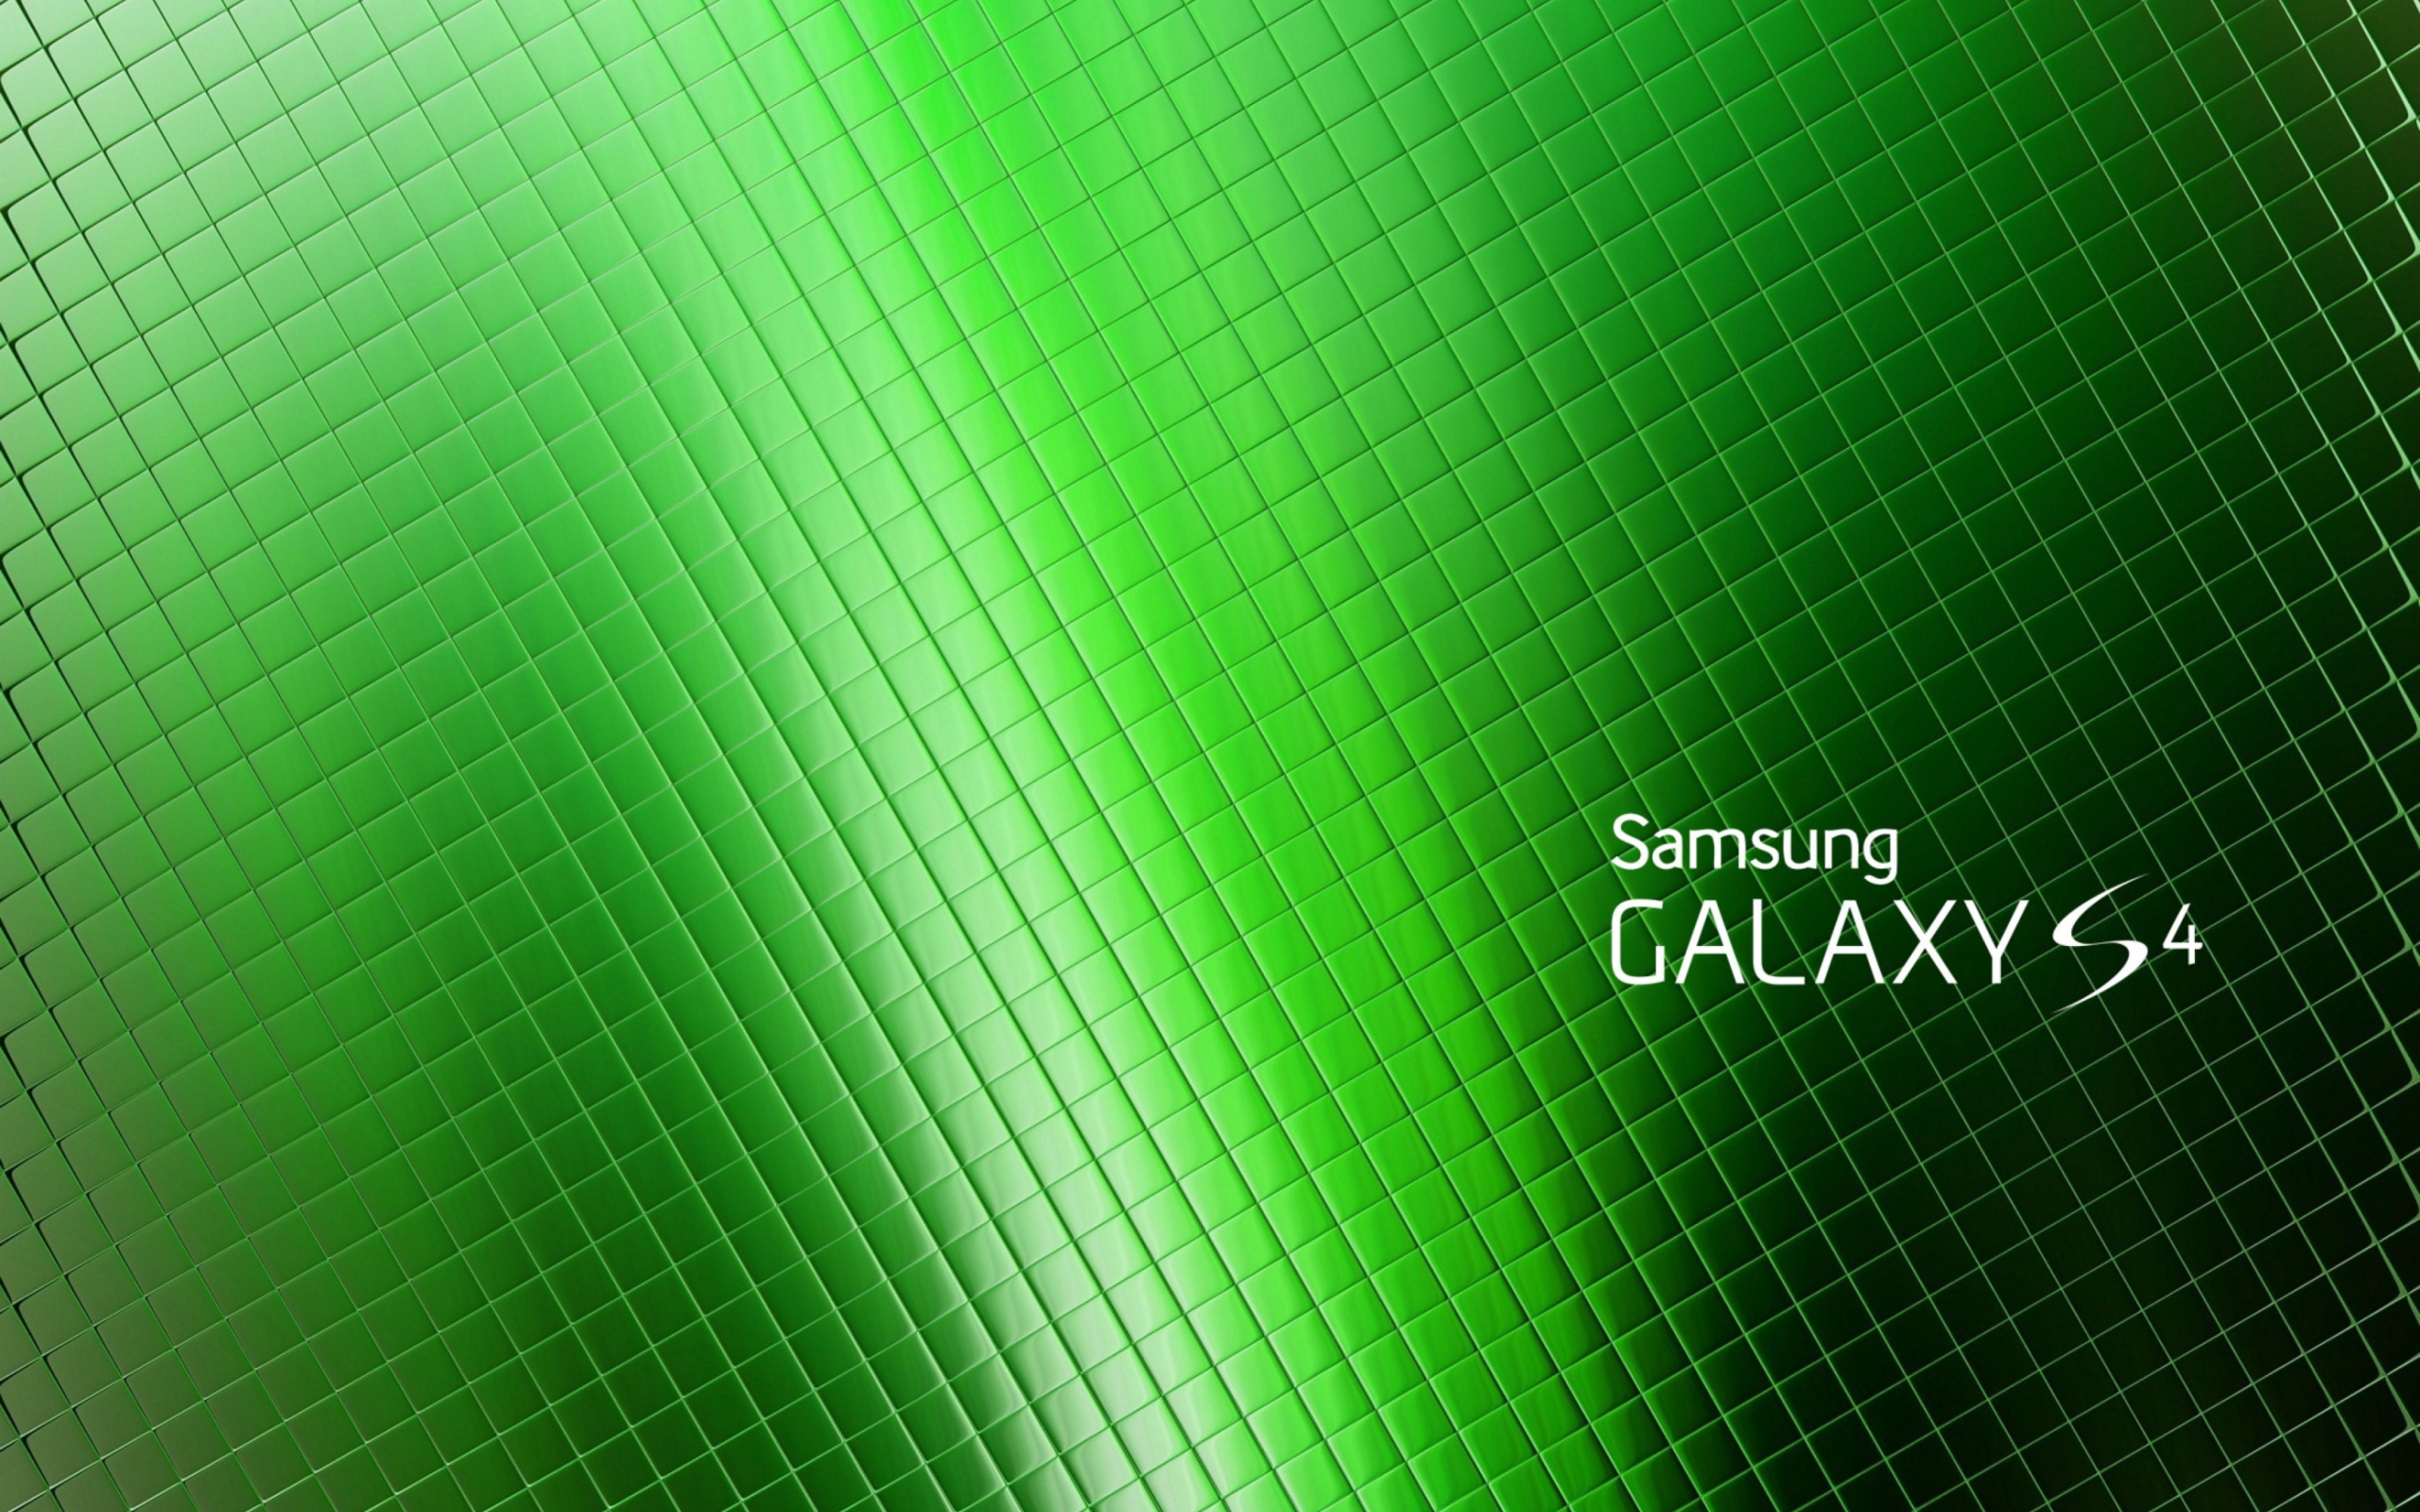 Galaxy S4 wallpaper 2560x1600